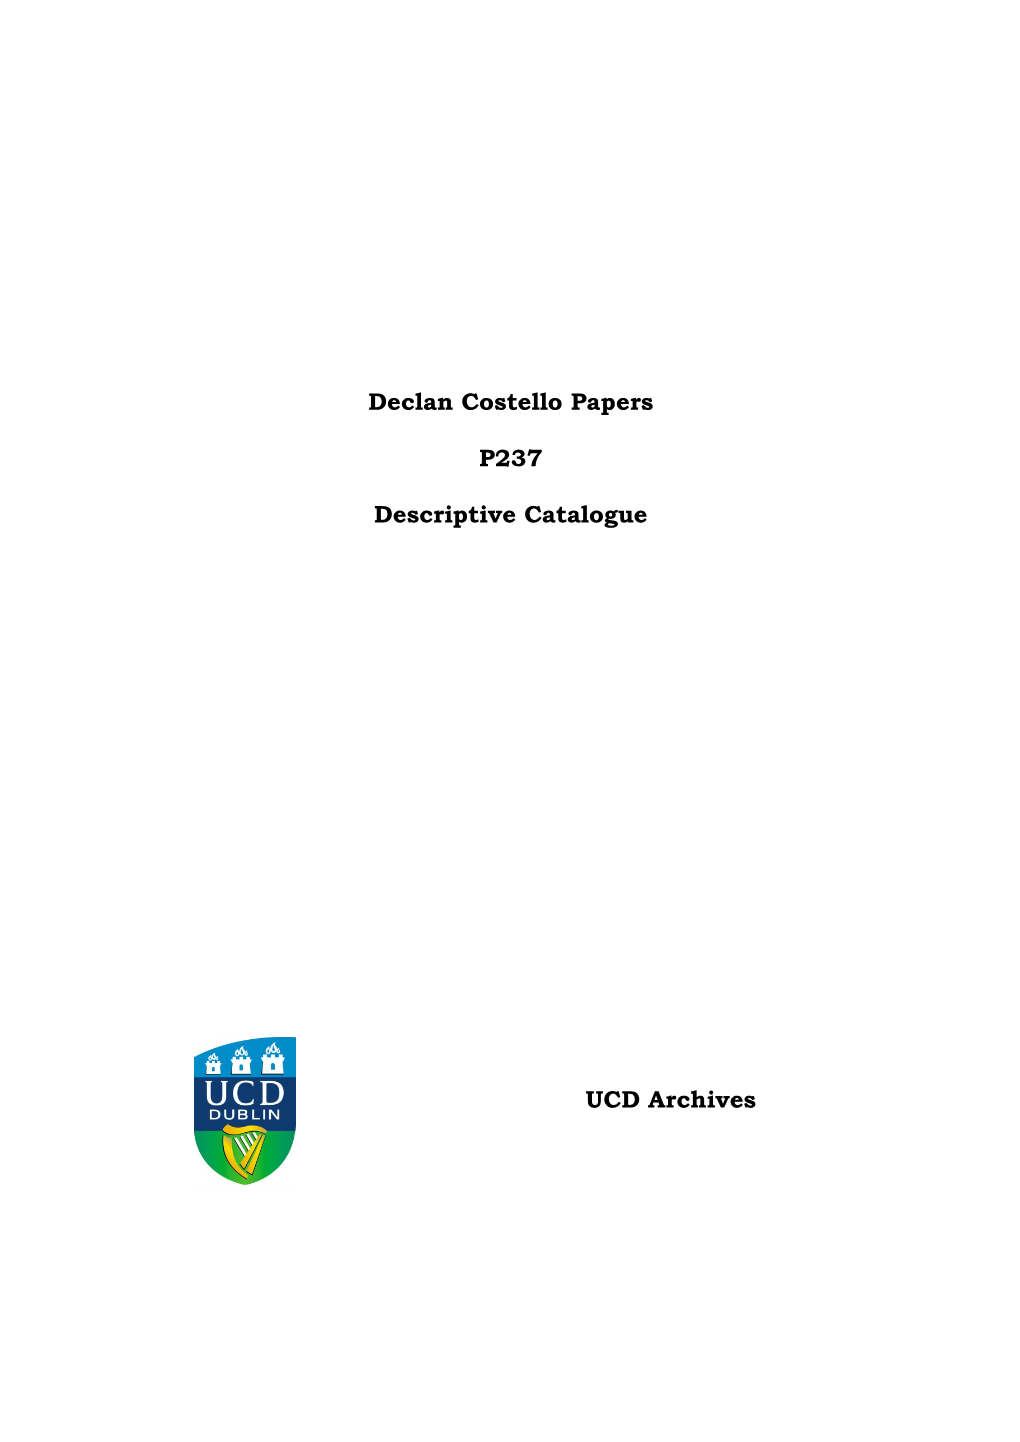 Declan Costello Papers P237 Descriptive Catalogue UCD Archives